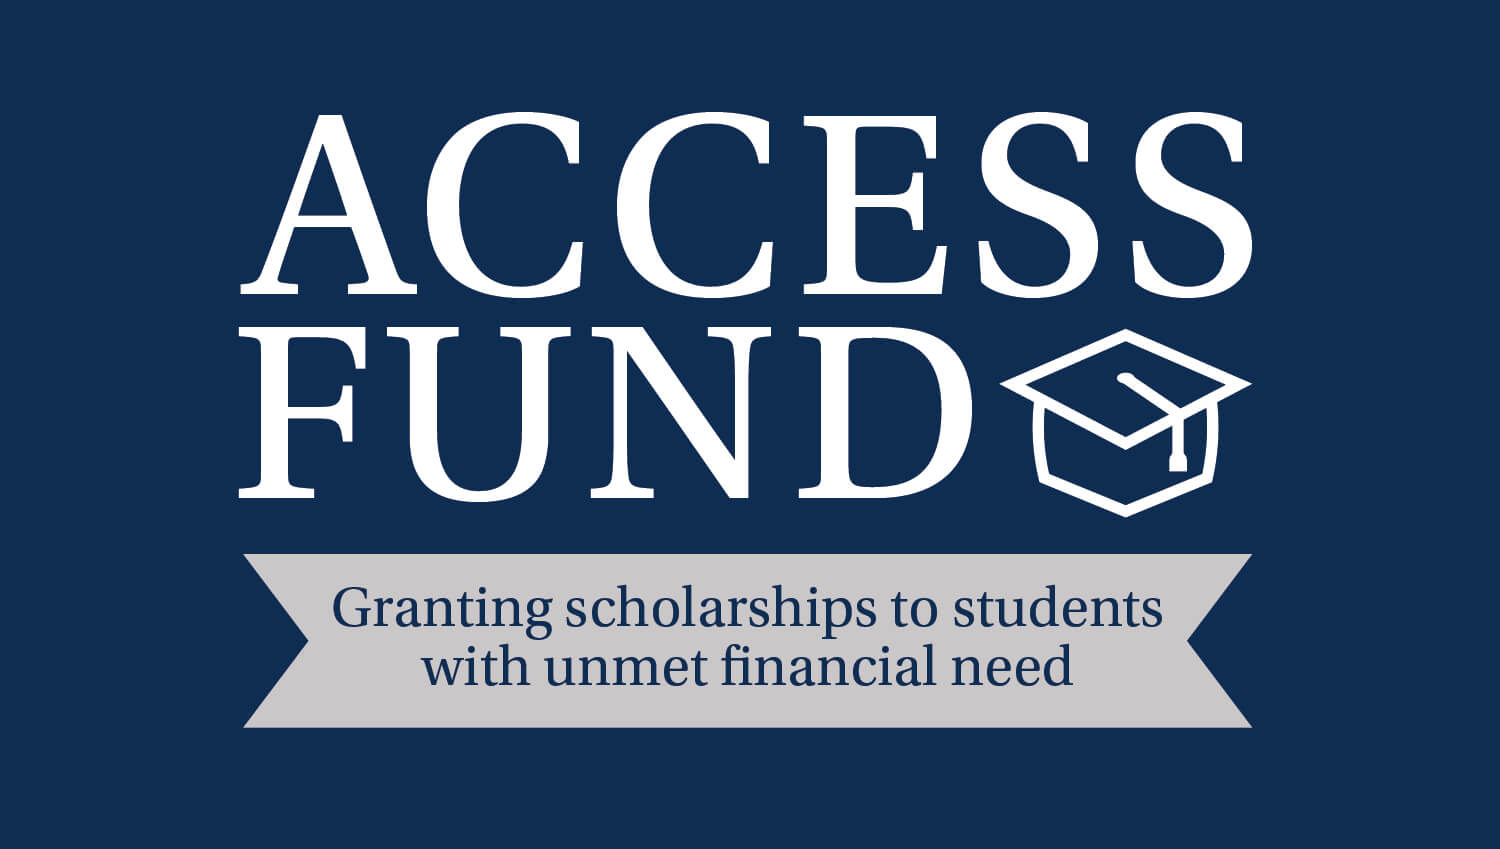 准入基金，为经济需求未得到满足的学生提供奖学金